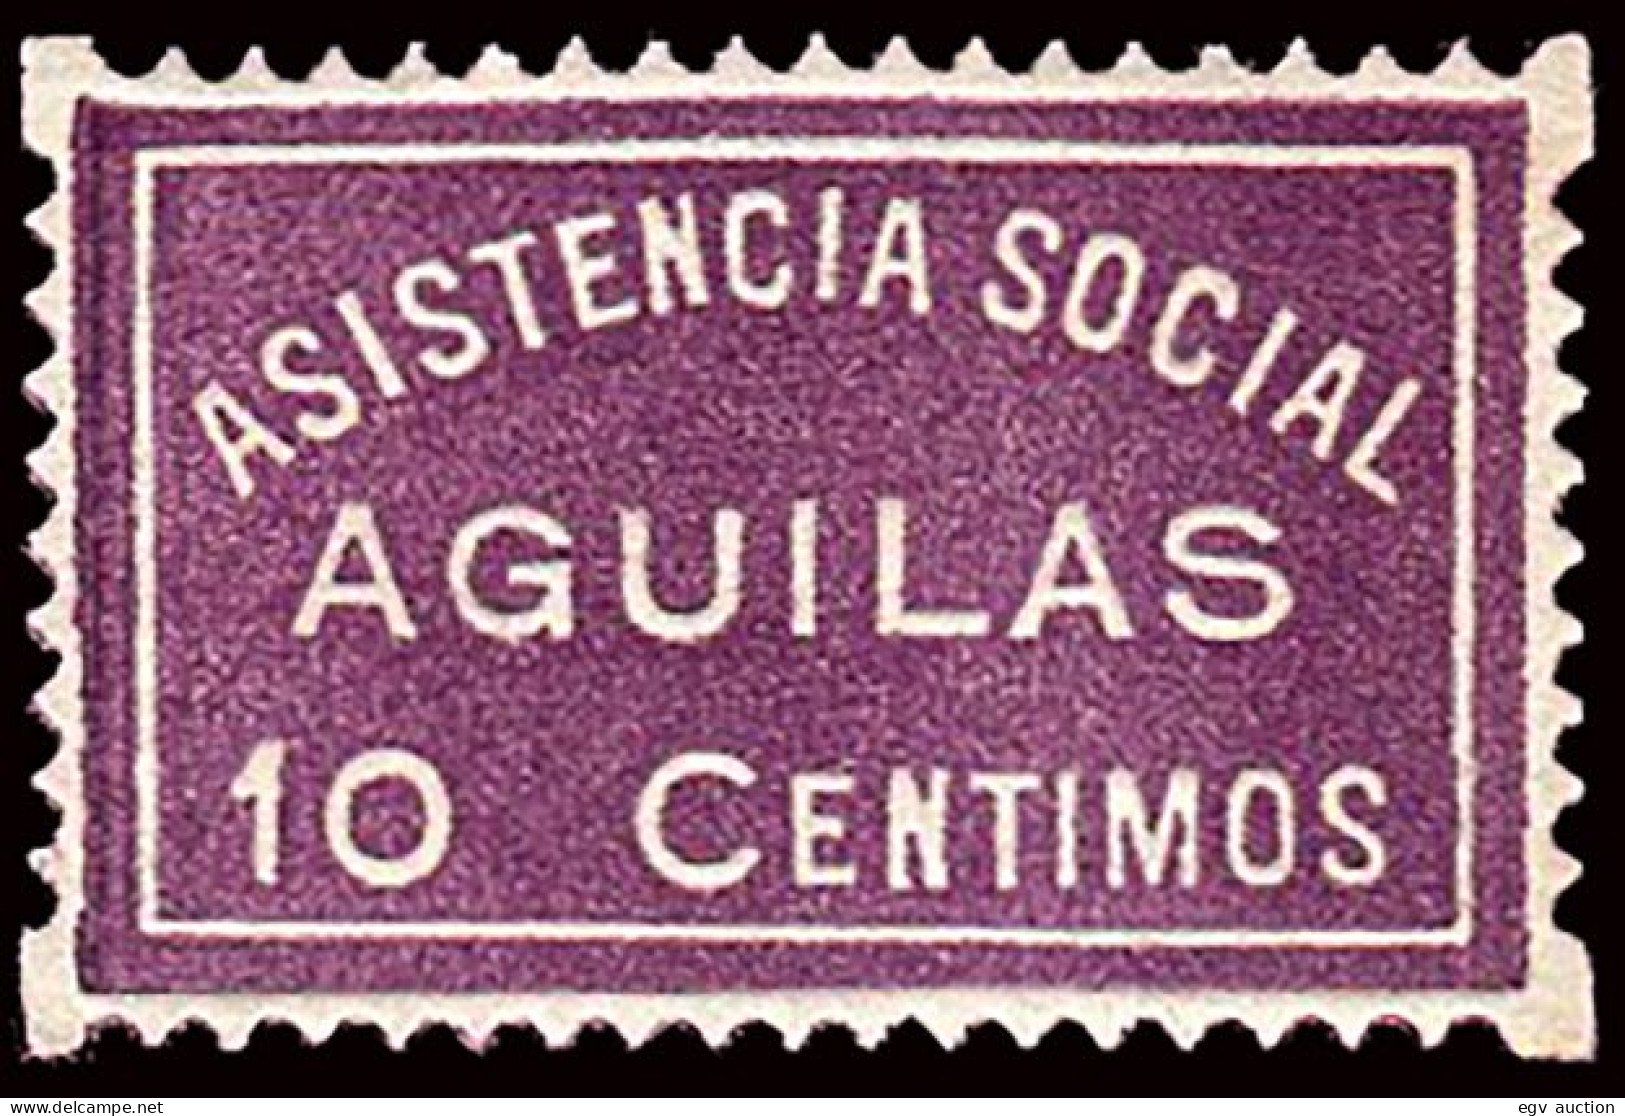 Murcia - Guerra Civil - Em. Local Republicana - Águilas - Allepuz ** 2 " 10cts. Asistencia Social" - Spanish Civil War Labels